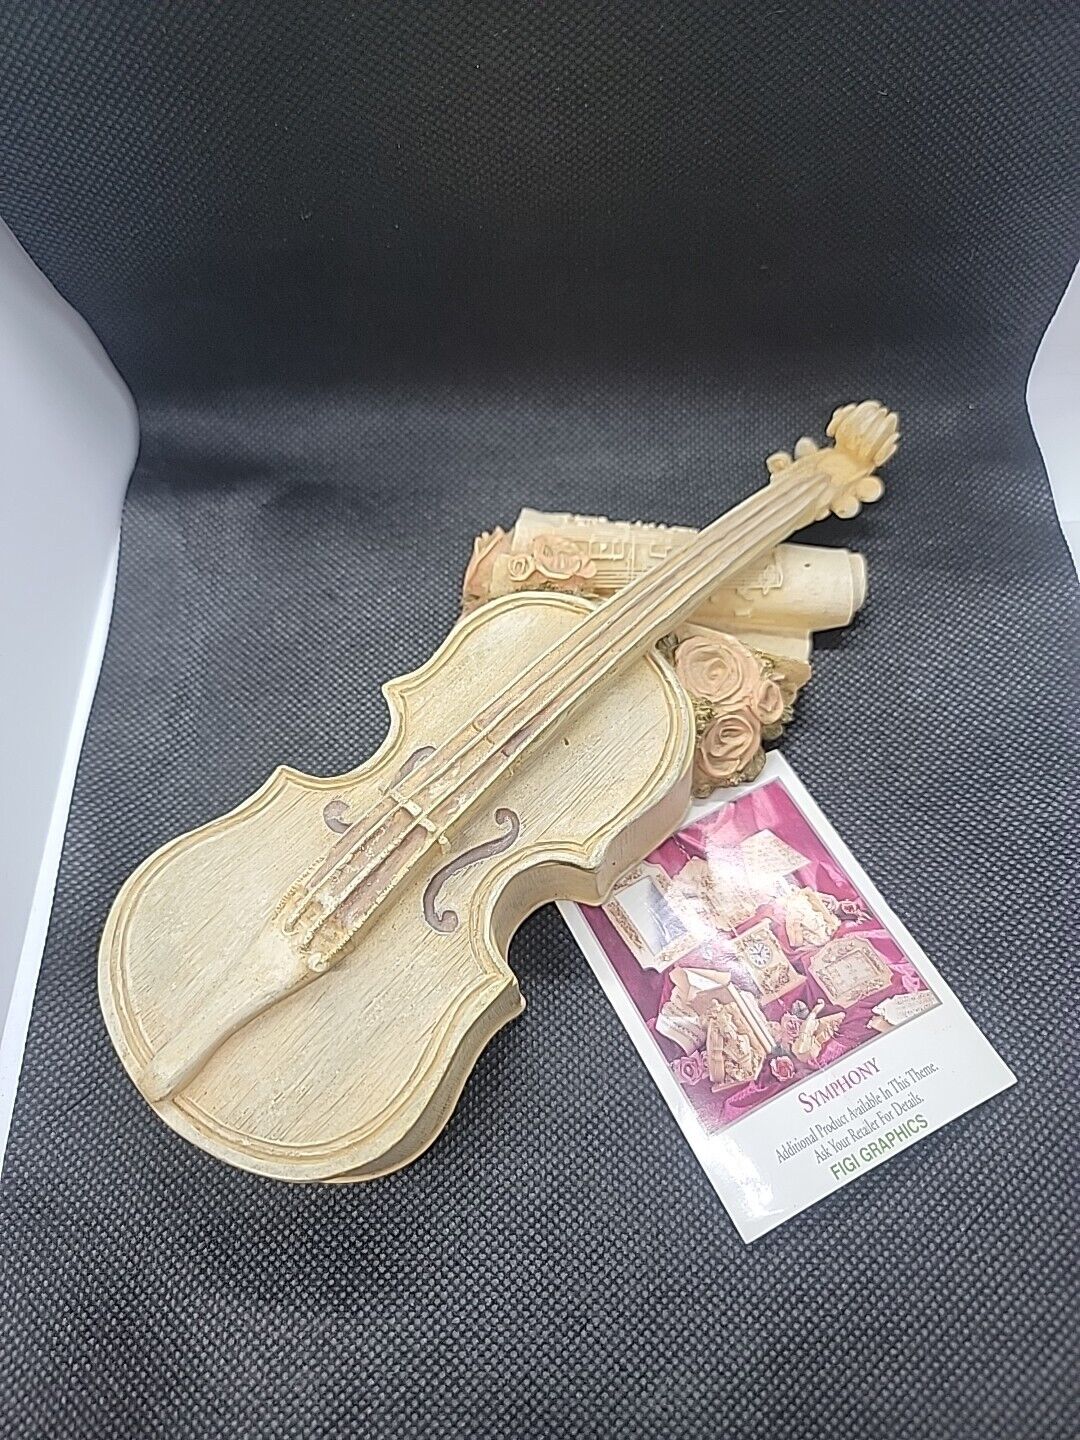 Vintage 1995 Figi Graphics Violin Music Box